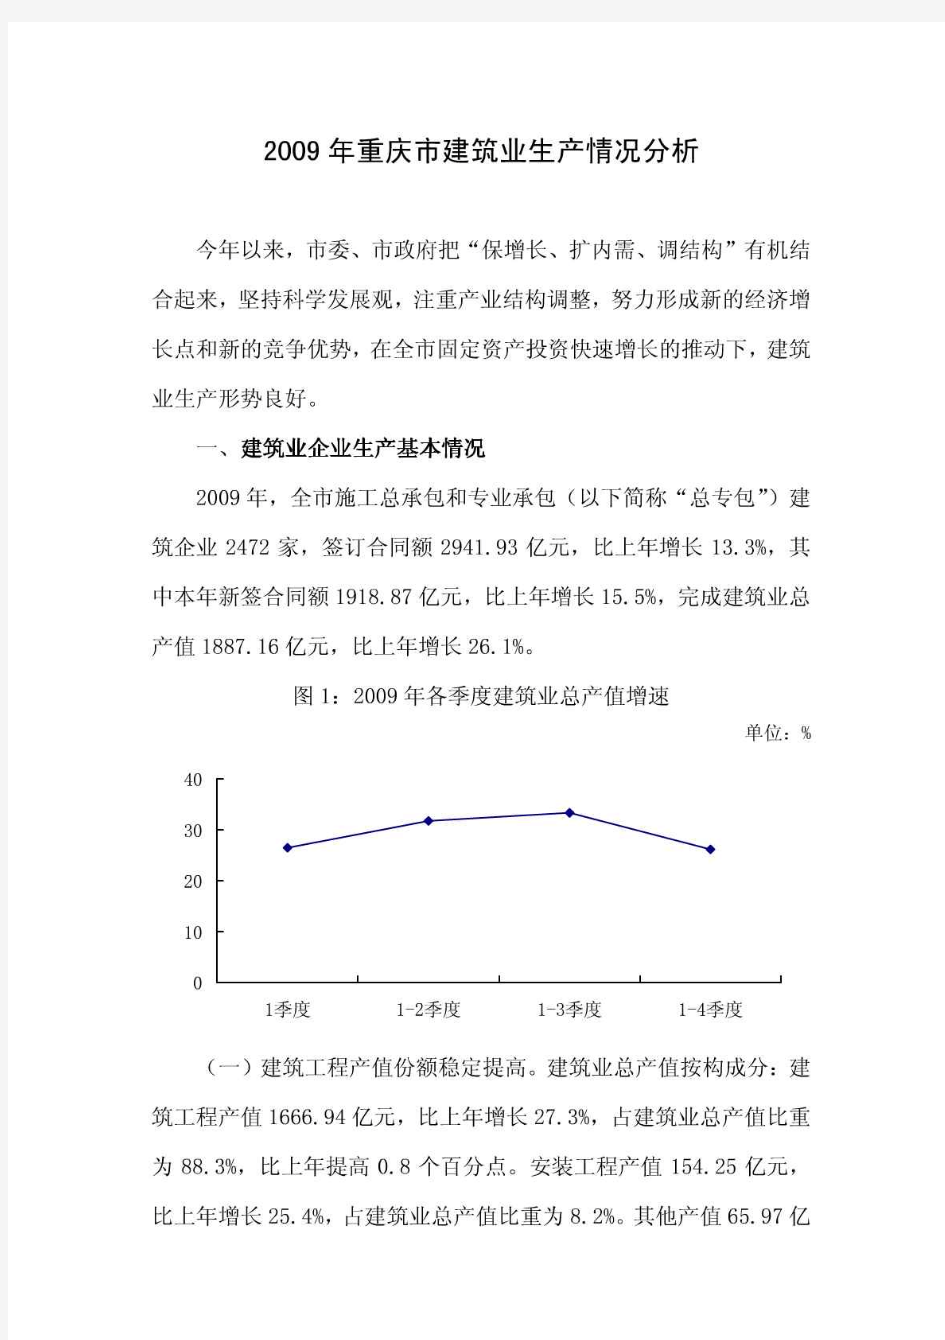 2010年重庆市建筑业生产情况分析